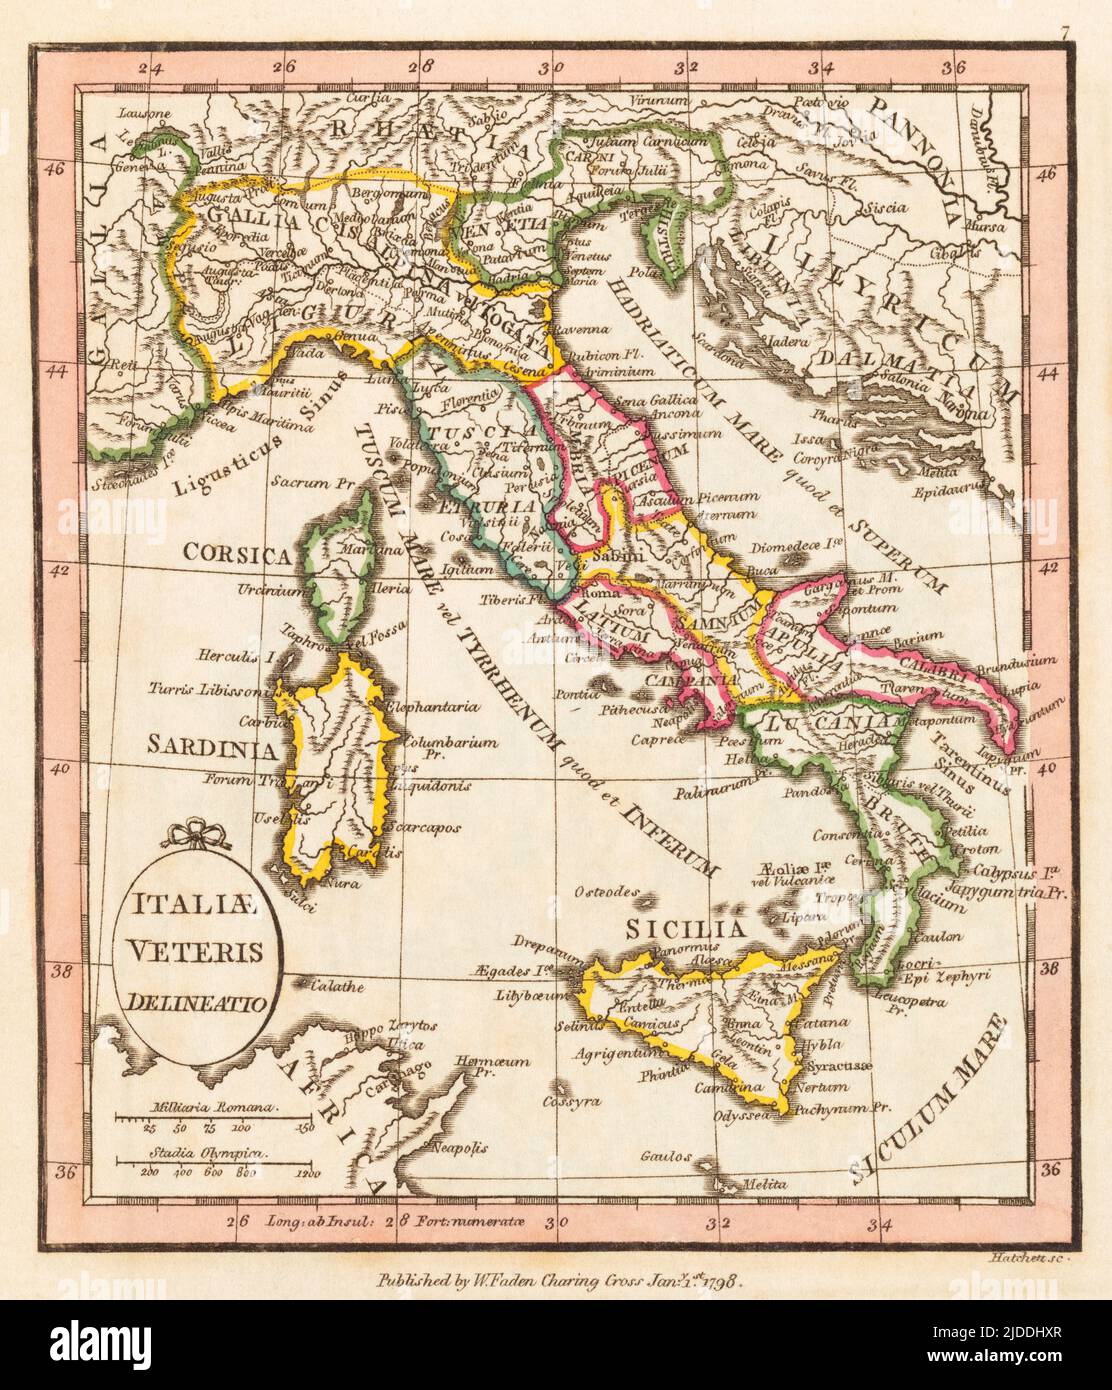 Mappa italia antica immagini e fotografie stock ad alta risoluzione - Alamy